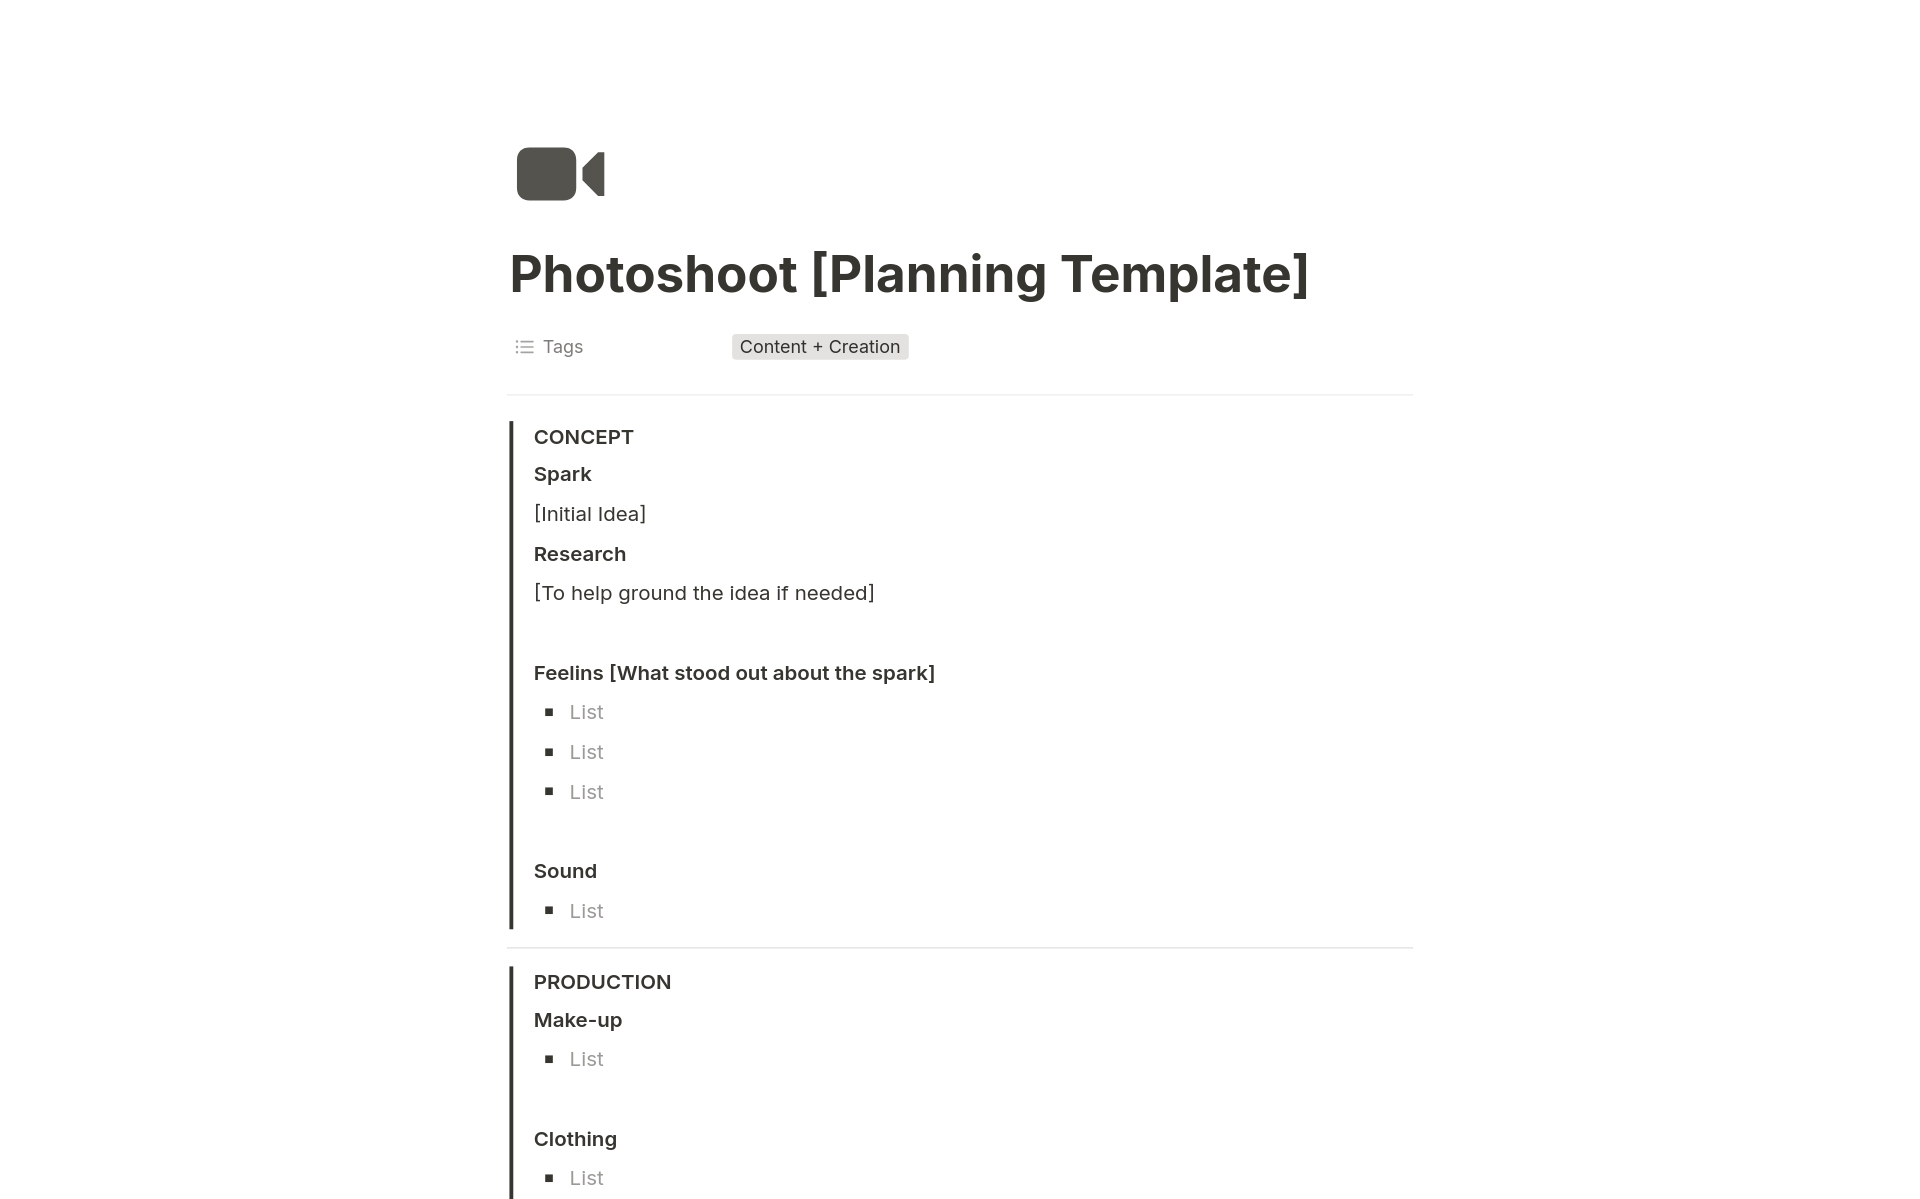 En forhåndsvisning av mal for Photoshoot Planning